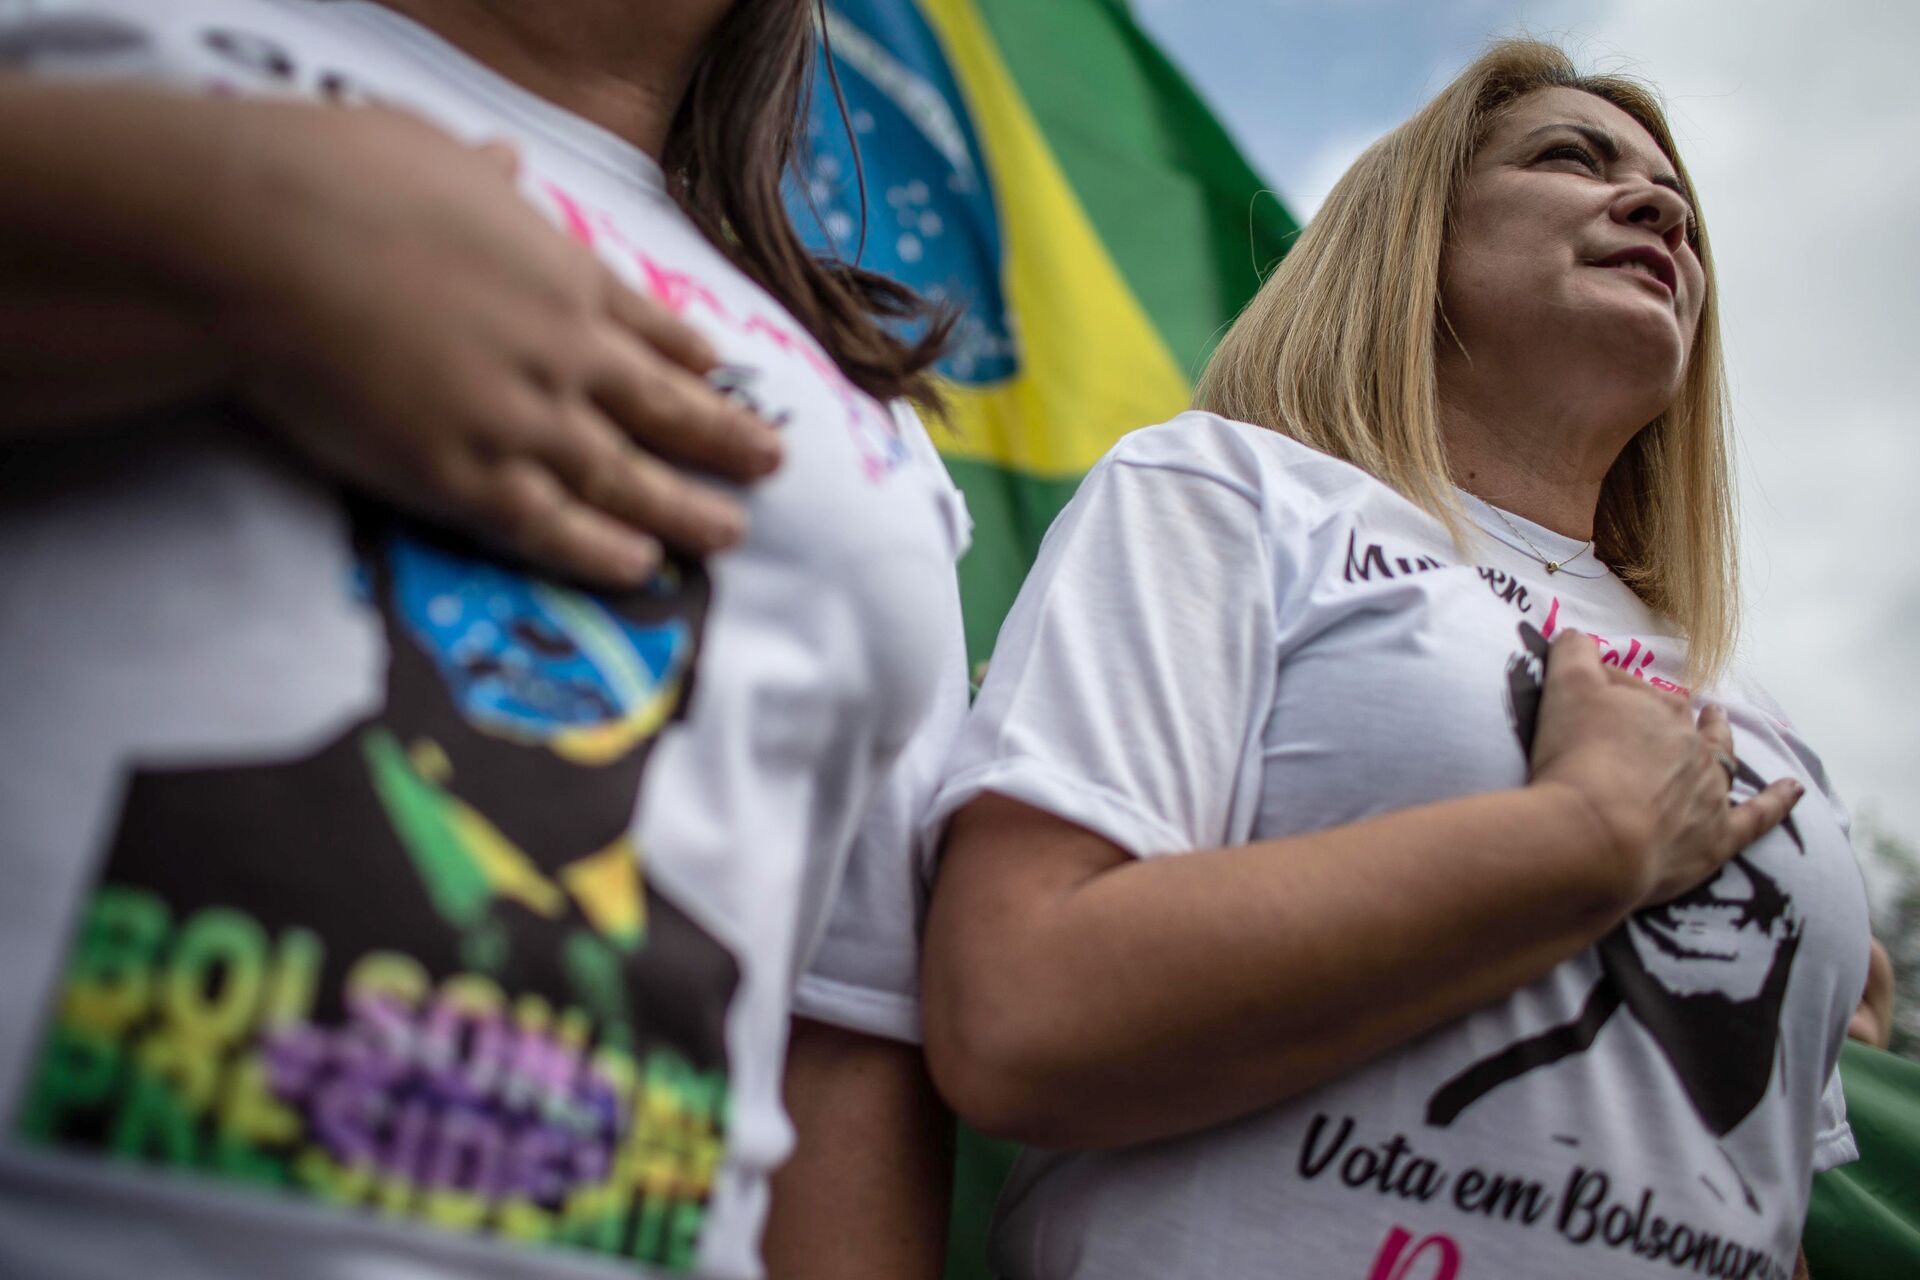 Com rachadinhas, Bolsonaro perde projeção junto a eleitor médio, afirma cientista político - Sputnik Brasil, 1920, 16.03.2021